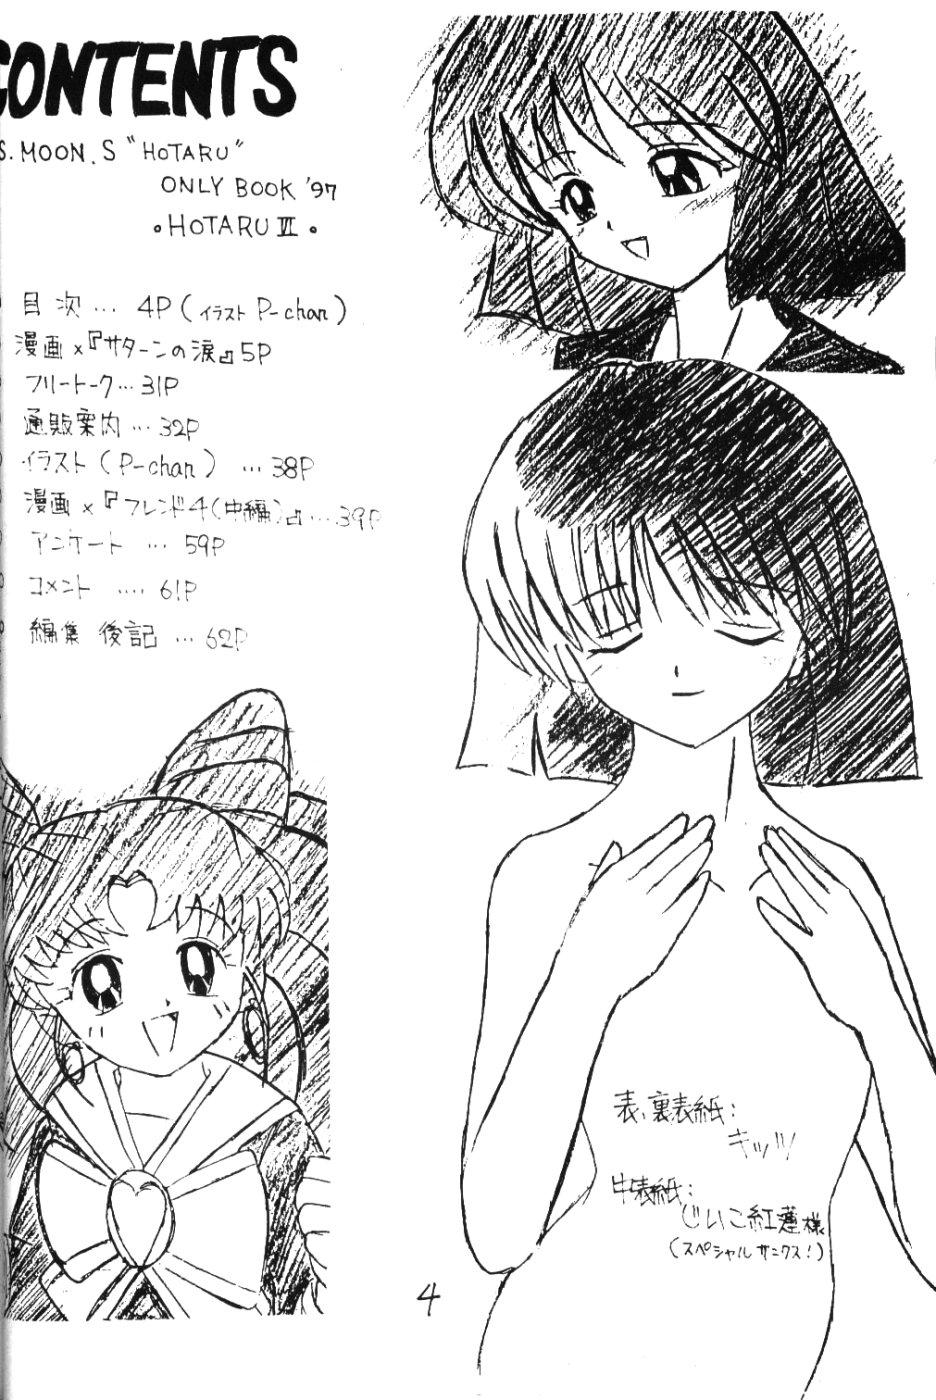 Celebrity Porn Hotaru VI - Sailor moon Dykes - Page 3